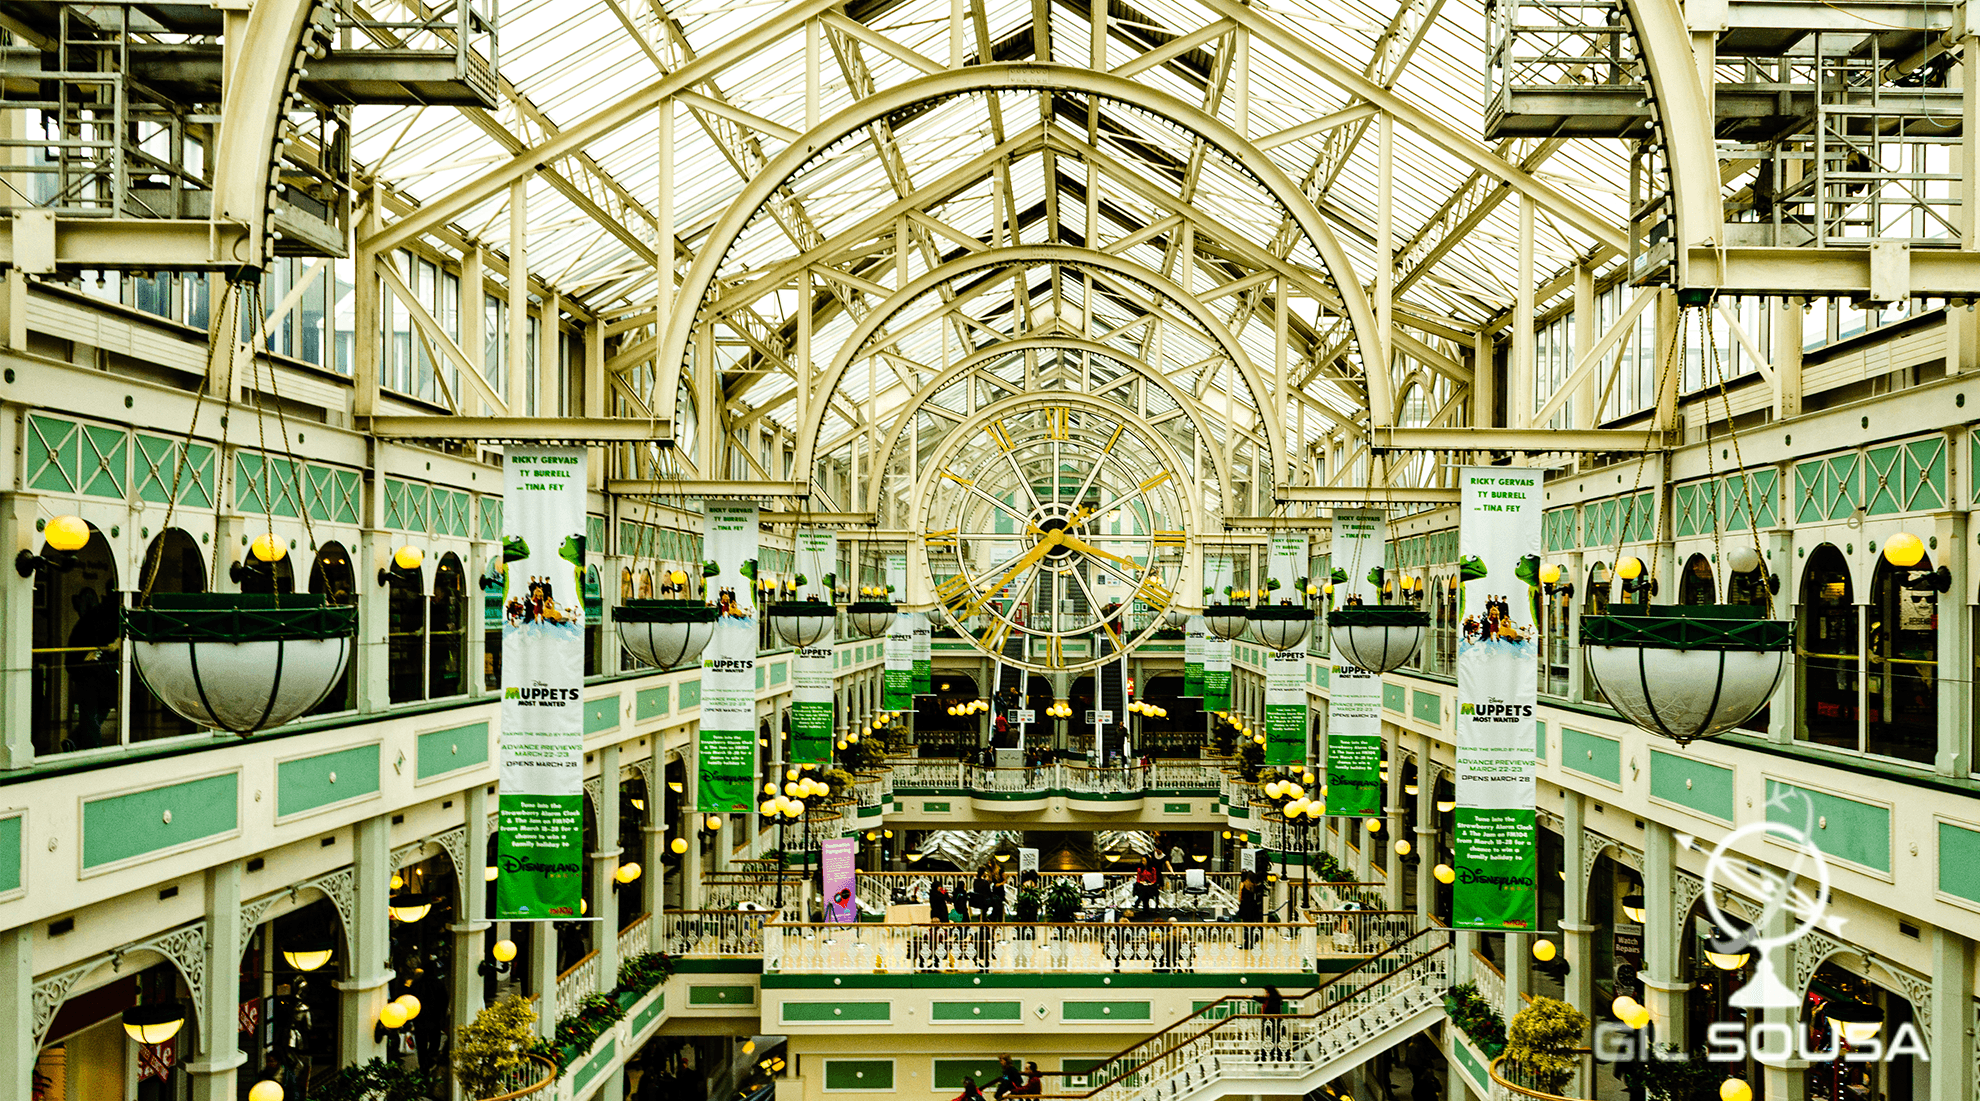 Stephen's Green Shopping Center